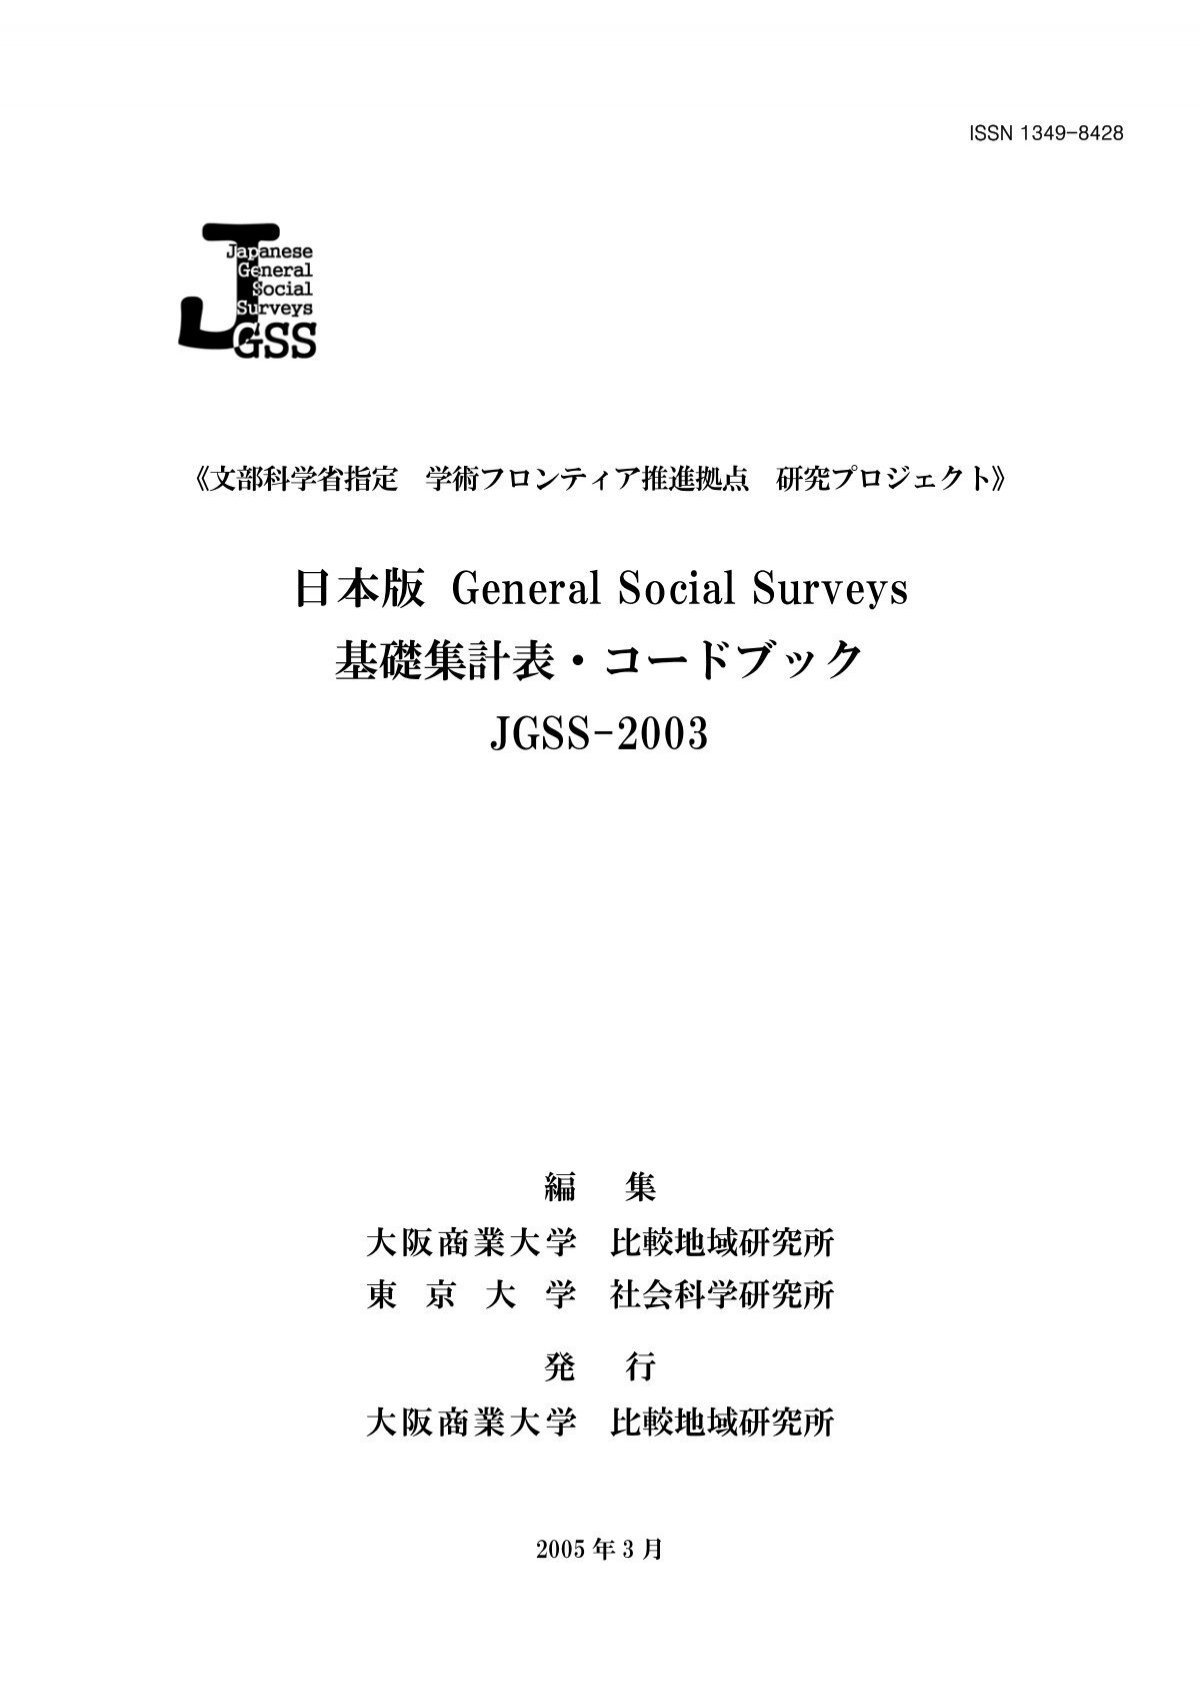 コードブック Jgss 03 大阪商業大学 Jgss研究センター